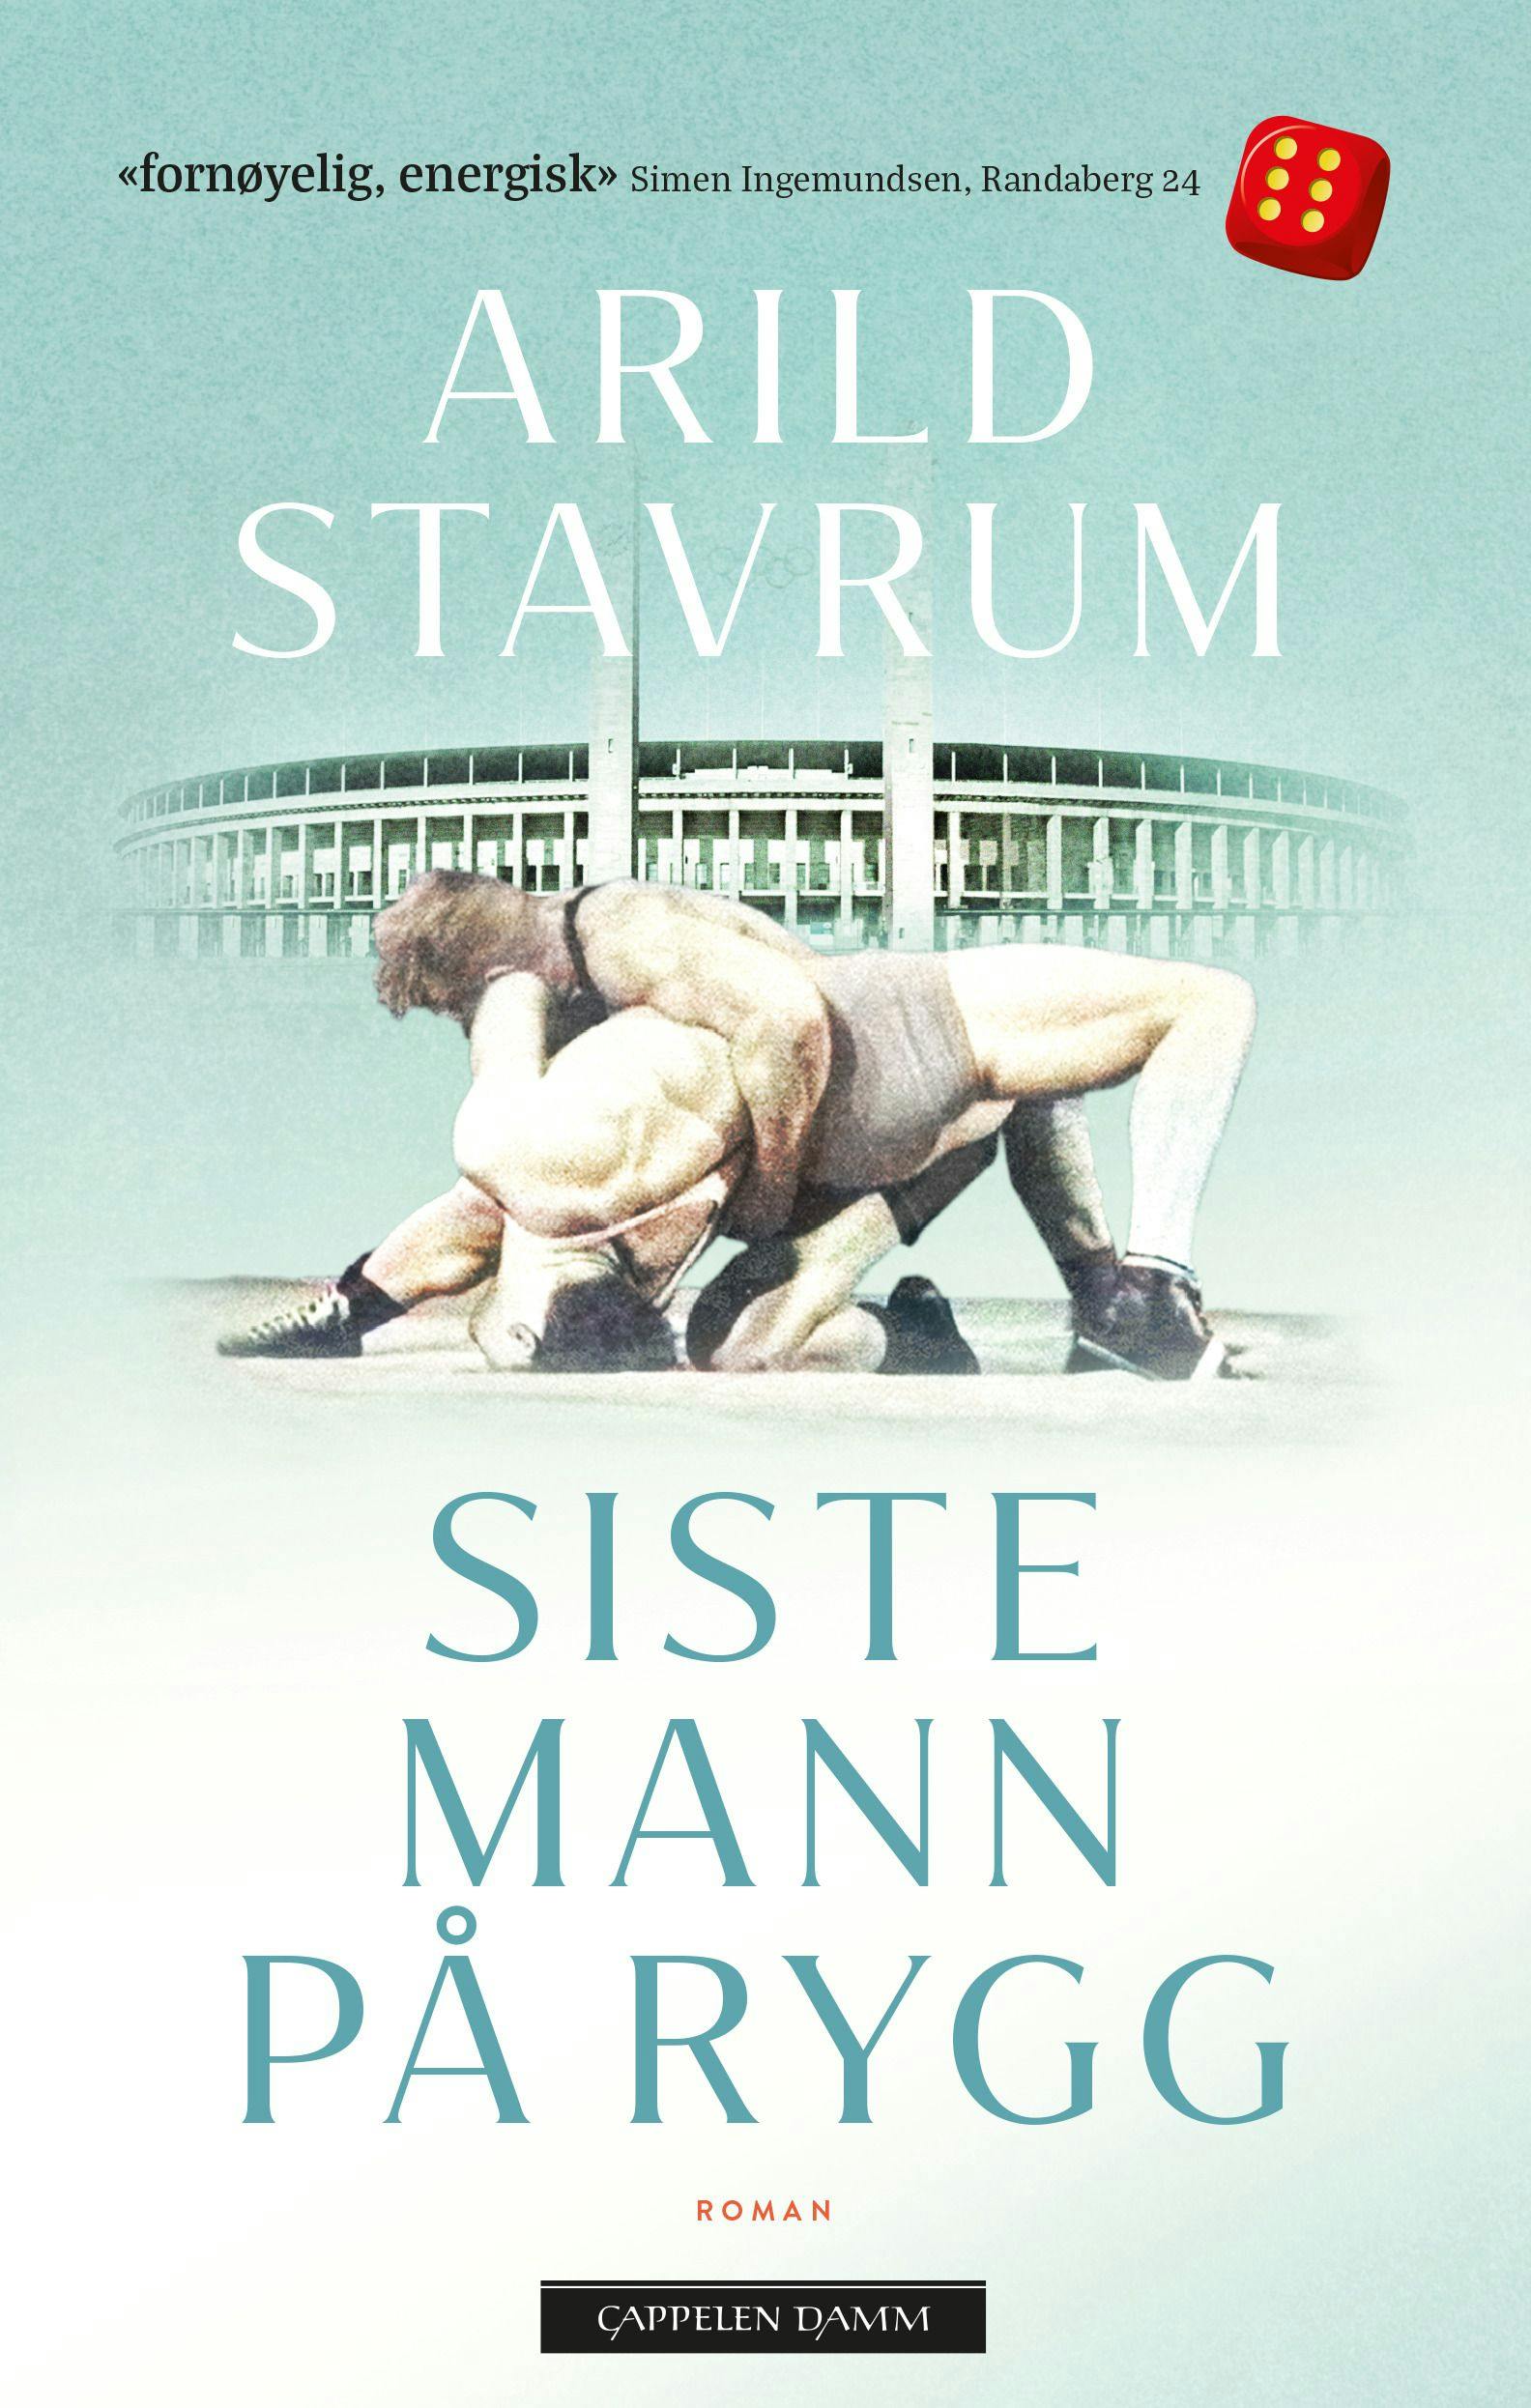 Forsidebilde av Siste mann på rygg av Arild Stavrum